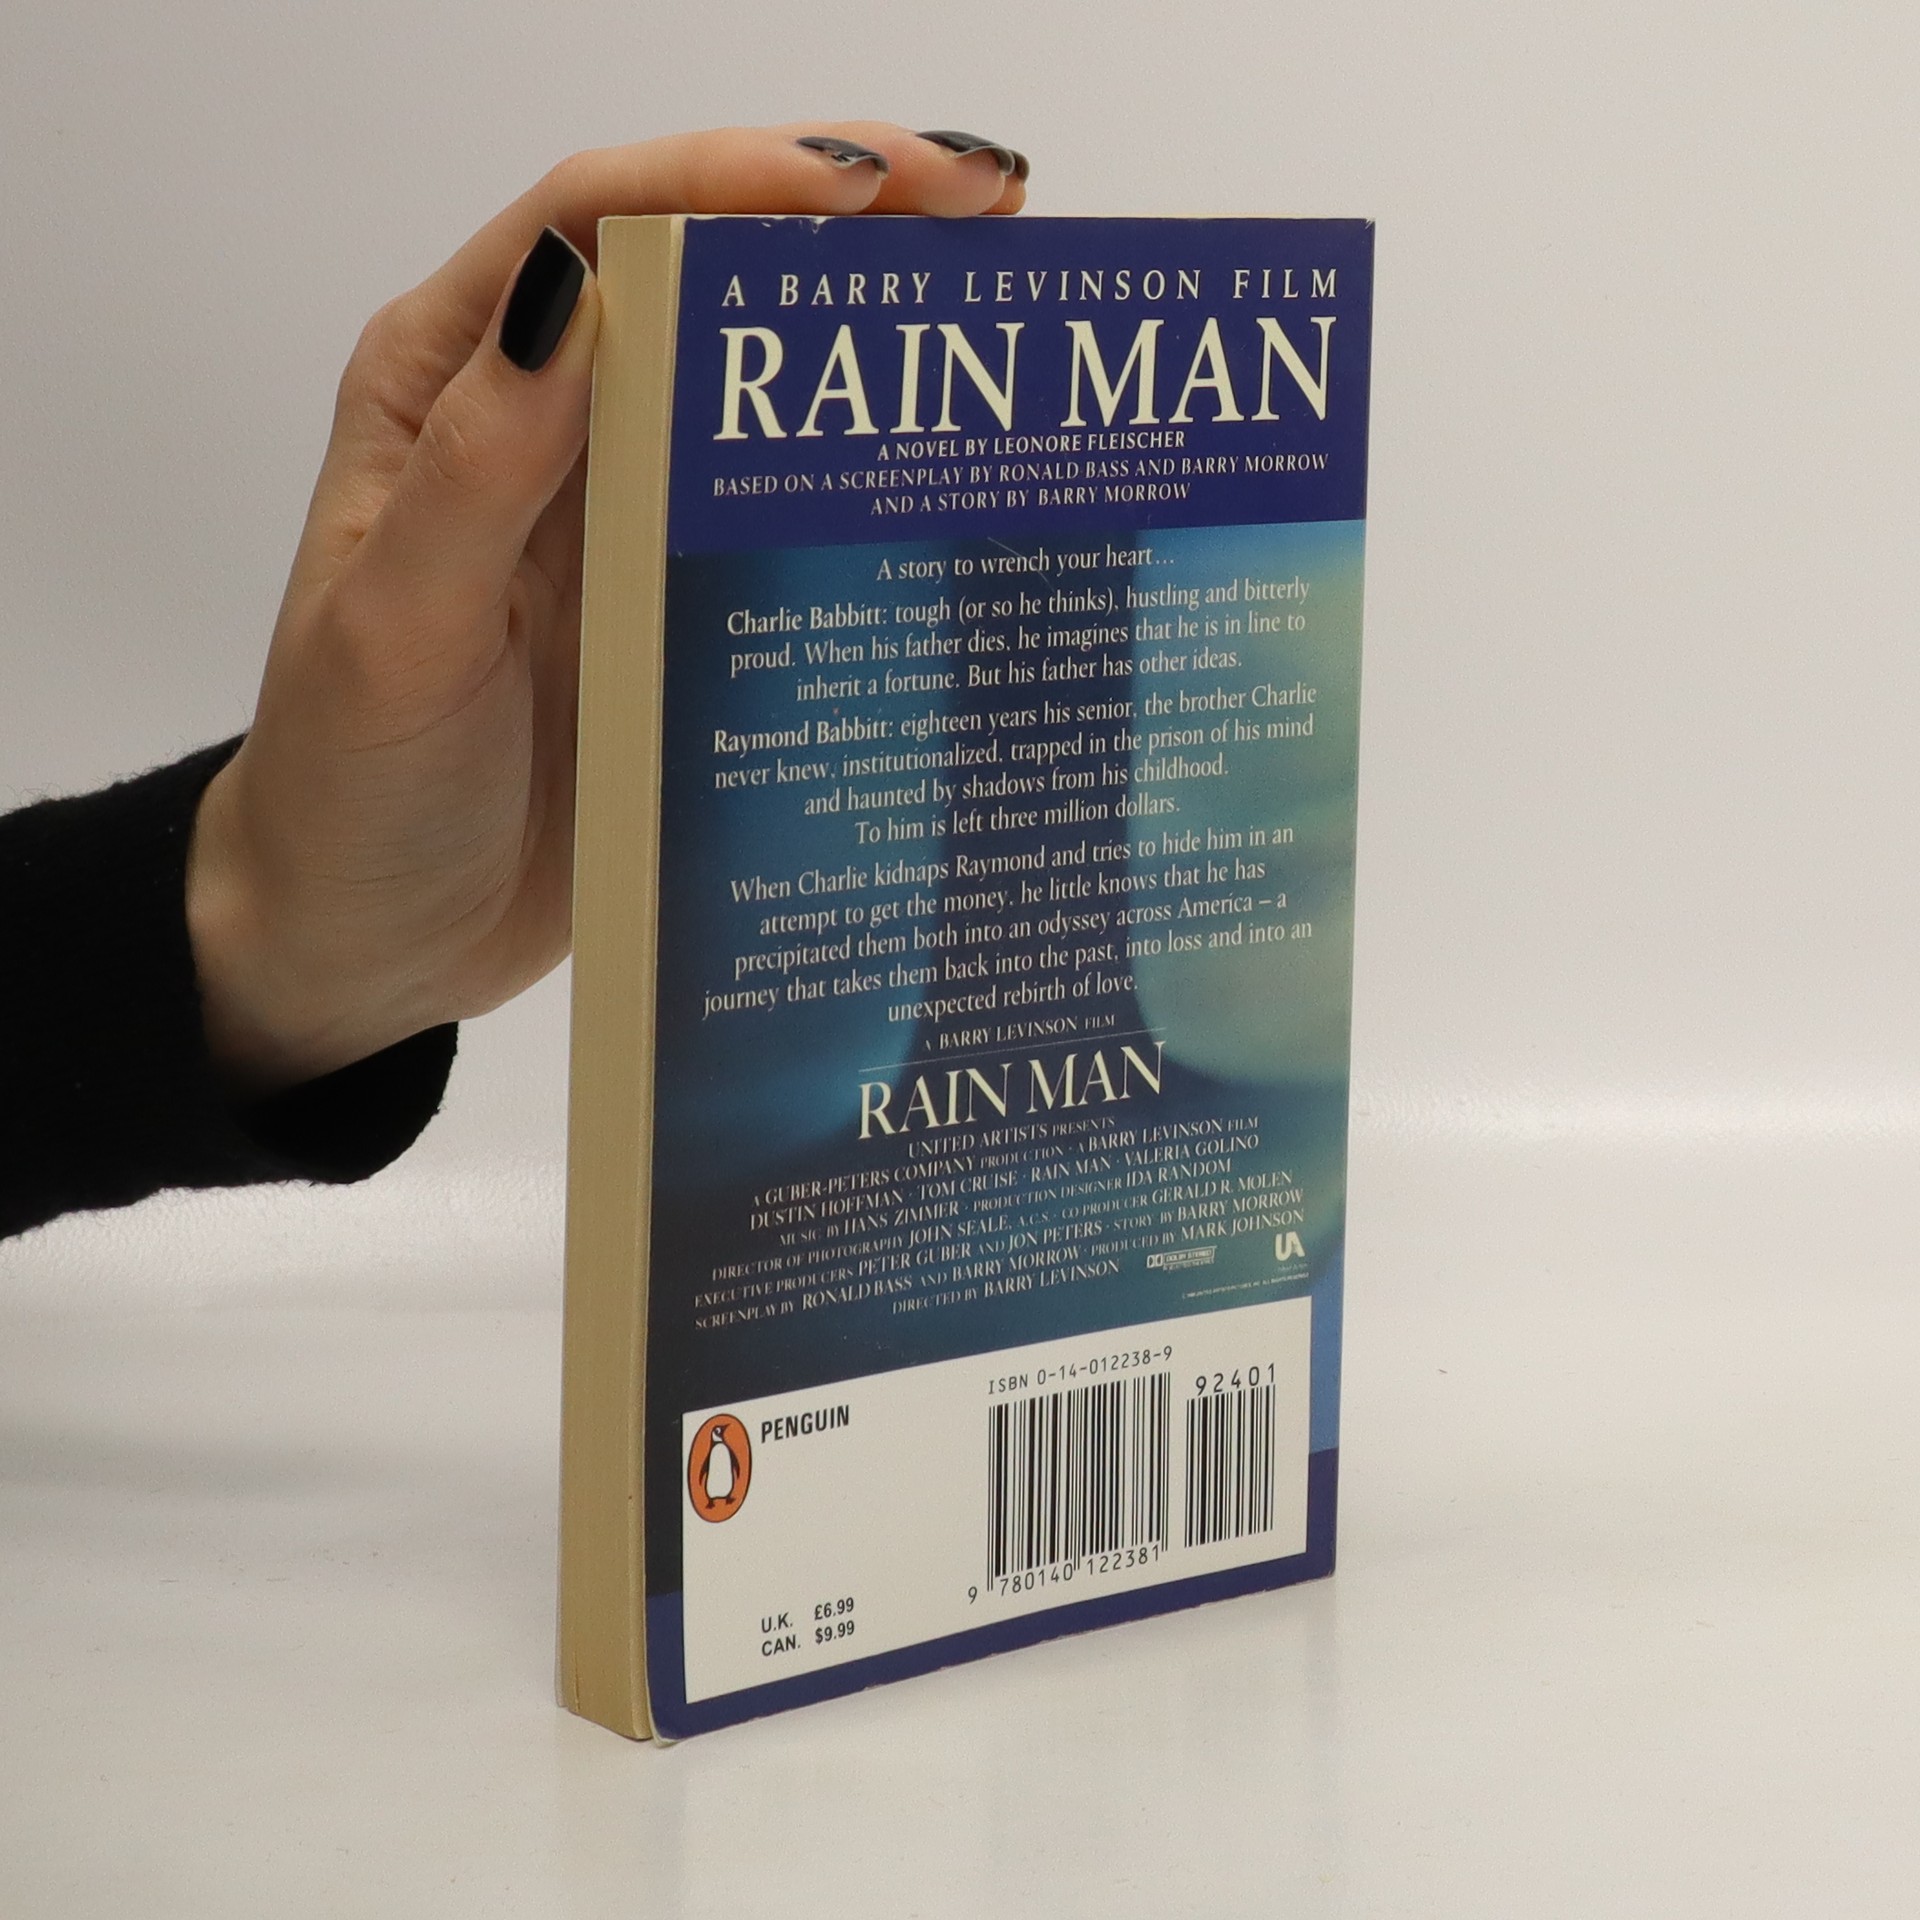 Rain Man by Leonore Fleischer